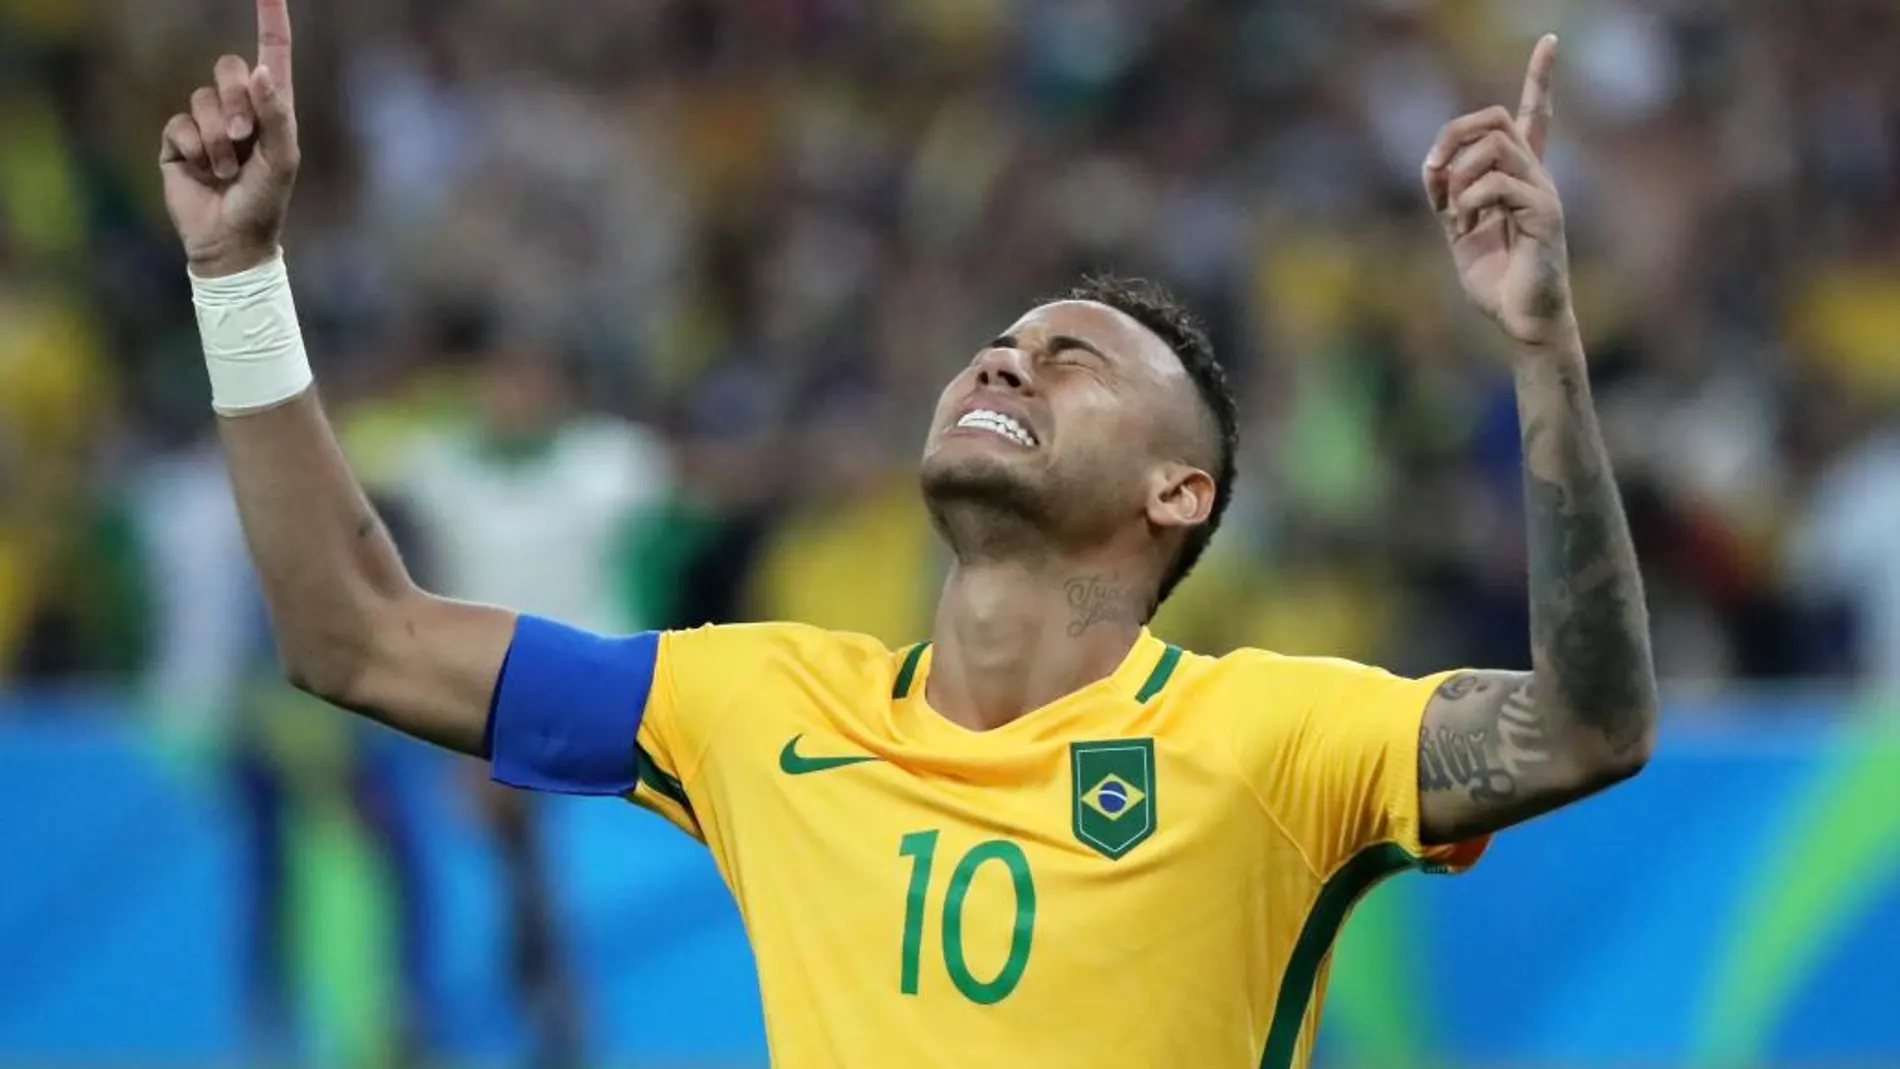 Fotografía del sábado 20 de agosto de 2016, de Neymar Jr. de Brasil celebrando el penalti que dio la victoria sobre Alemania